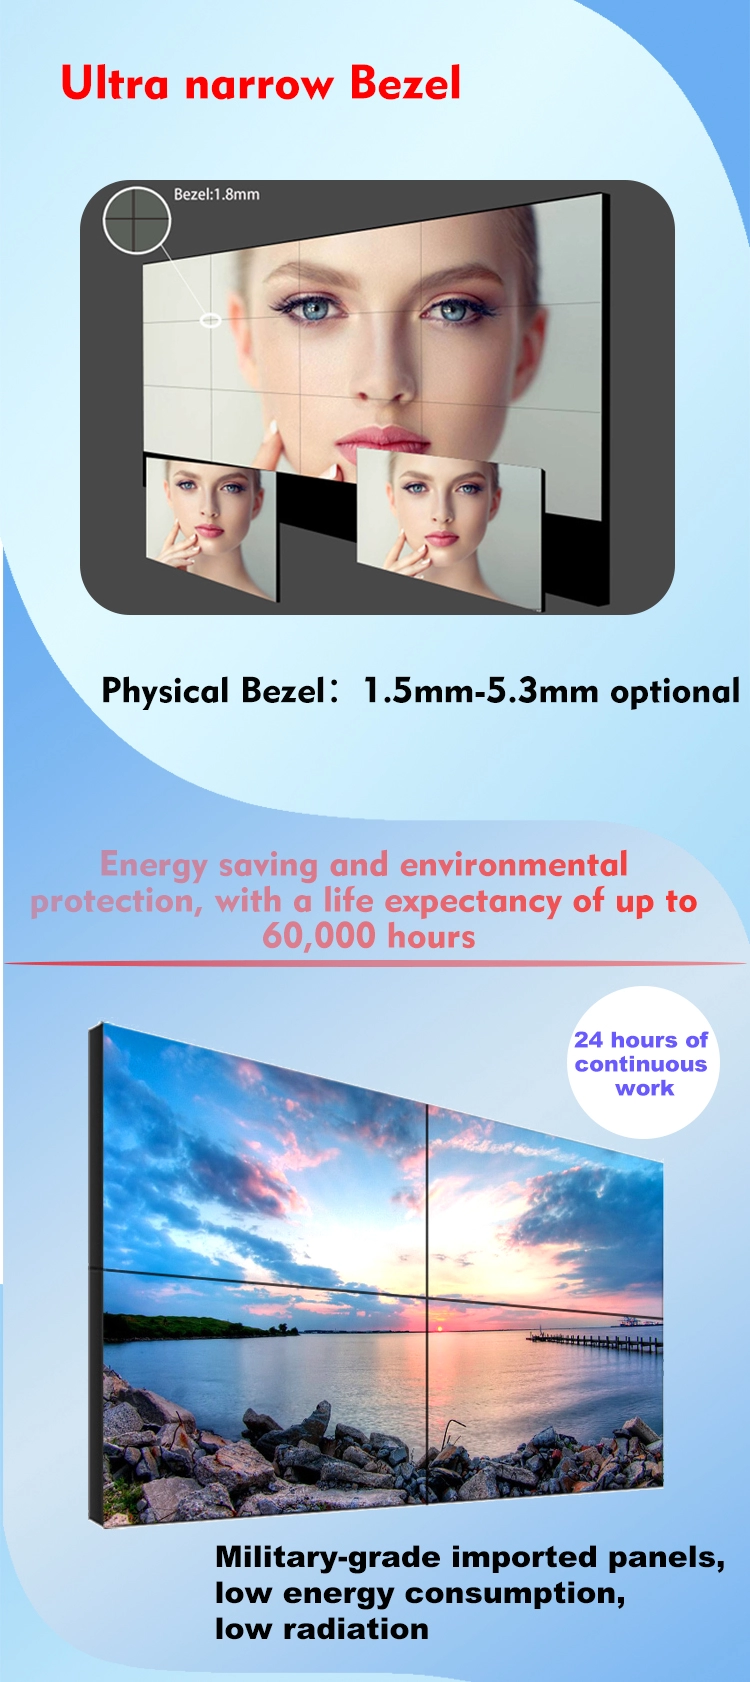 Parete video d'impionbatura di pubblicità digitale commerciale LCD principale dell'interno a 55 pollici dell'esposizione di 1x4 2x2 2x3